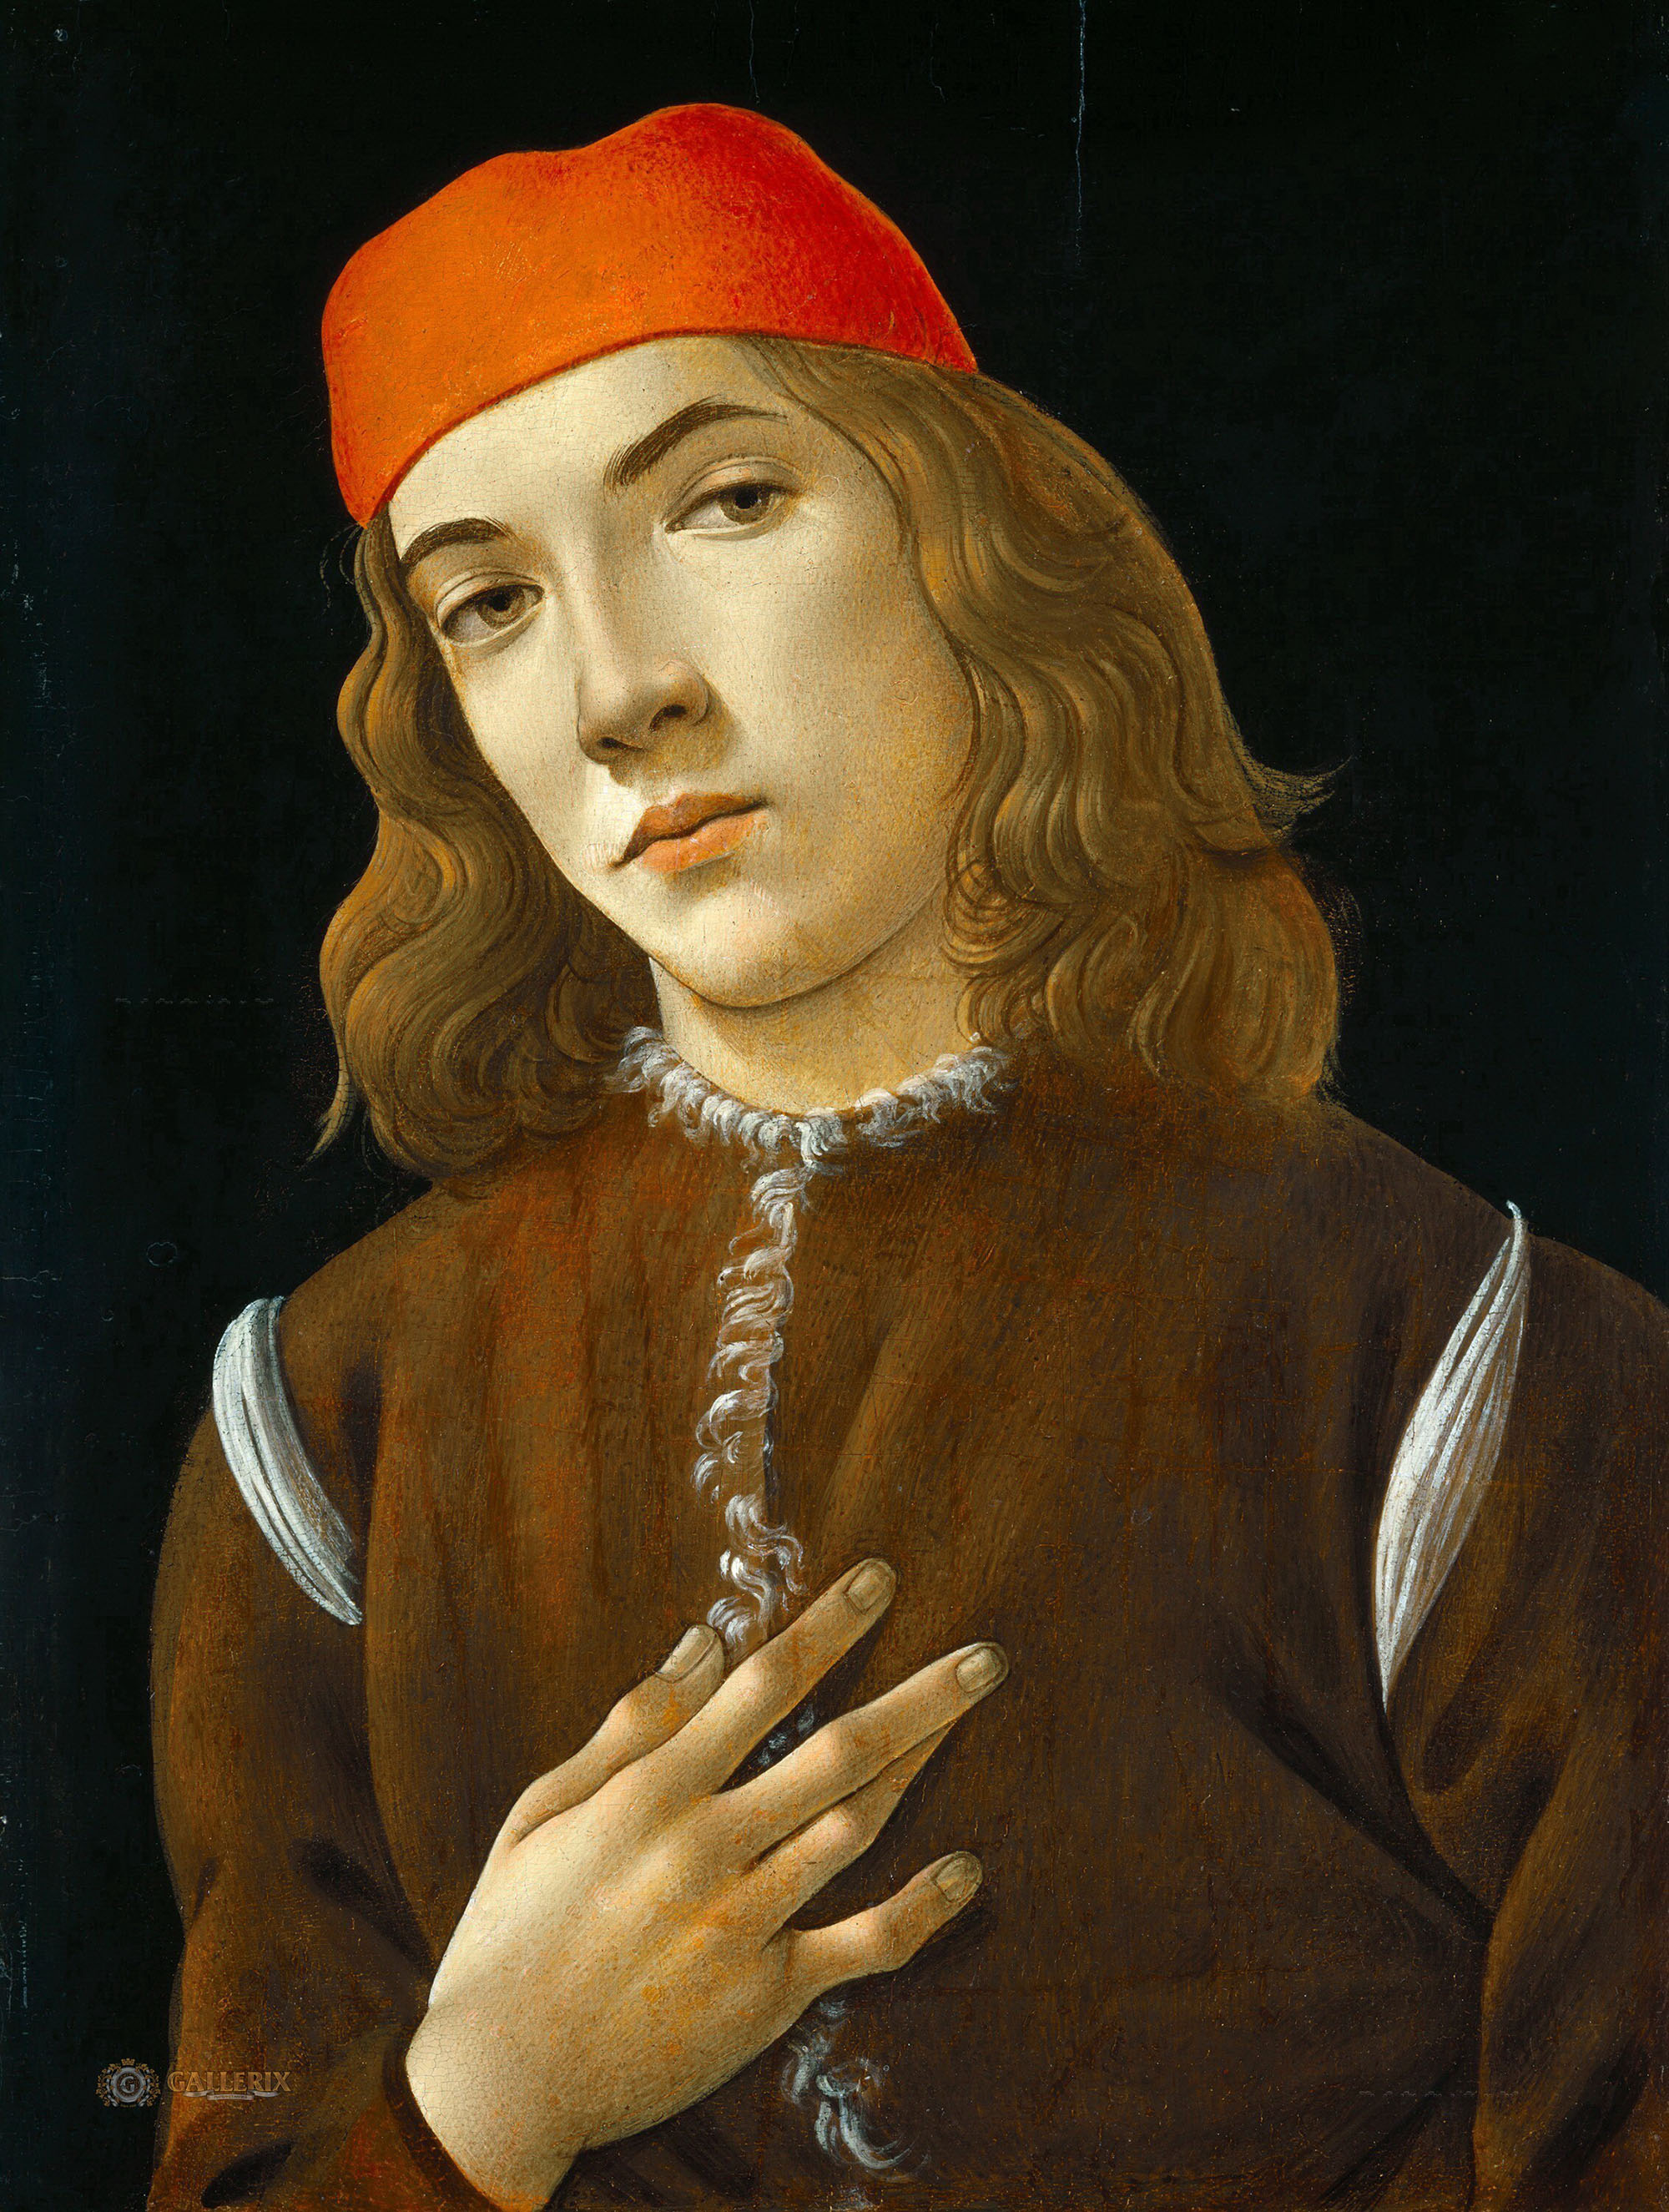 Сандро Боттичелли. "Портрет молодого человека". 1482-1483. Национальная галерея искусств, Вашингтон.